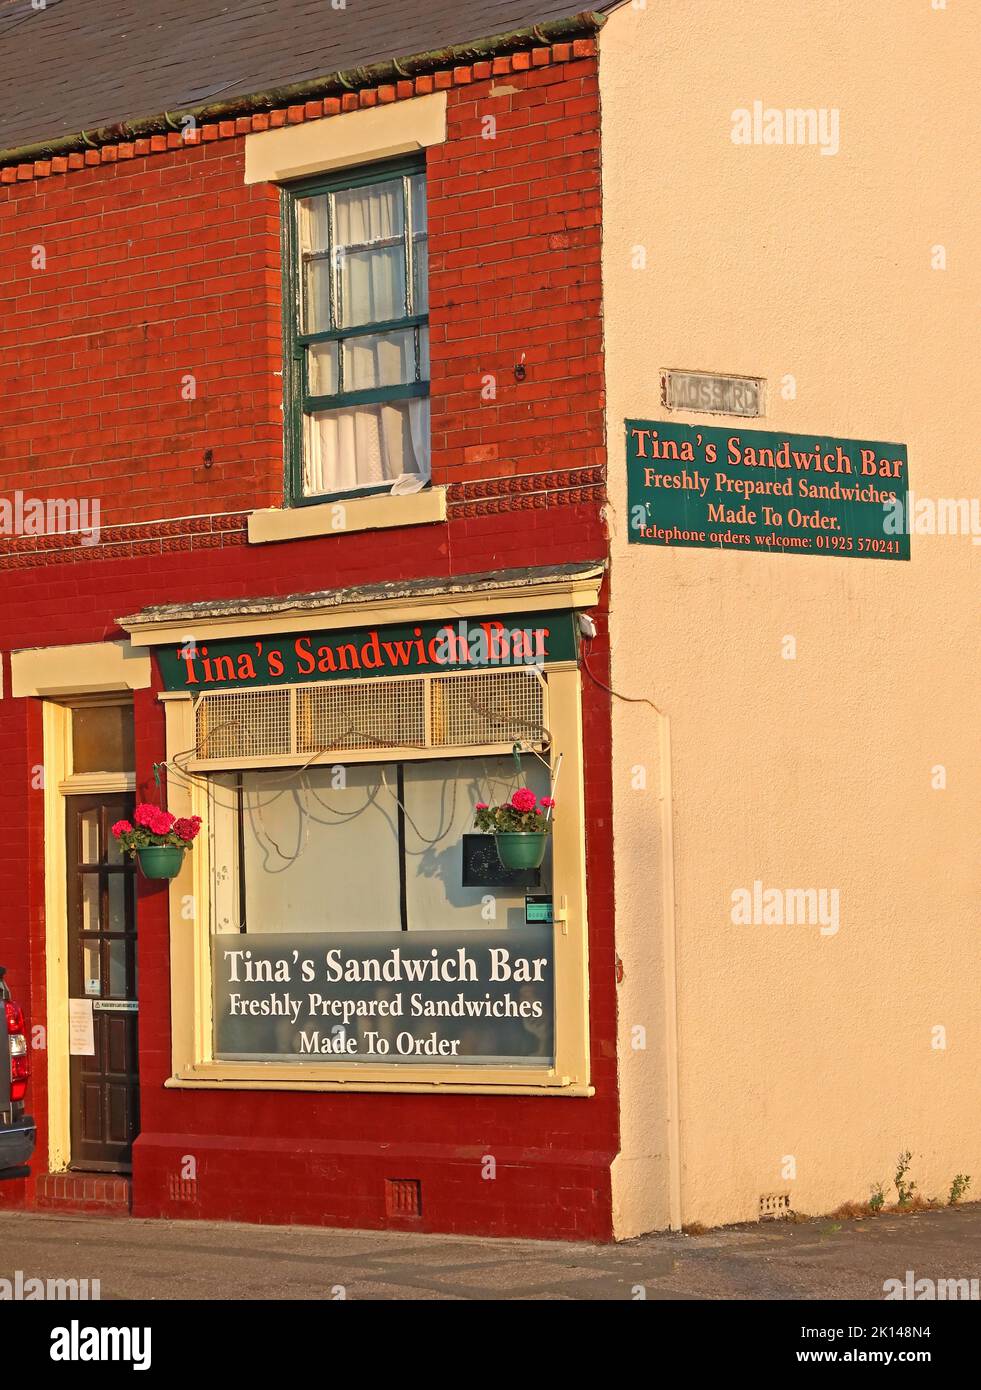 Petite entreprise indépendante de sandwichs, bar à sandwichs Tinas, Thelwall Lane, Latchford, Warrington, Cheshire, Angleterre, Royaume-Uni, WA4 1ND Banque D'Images